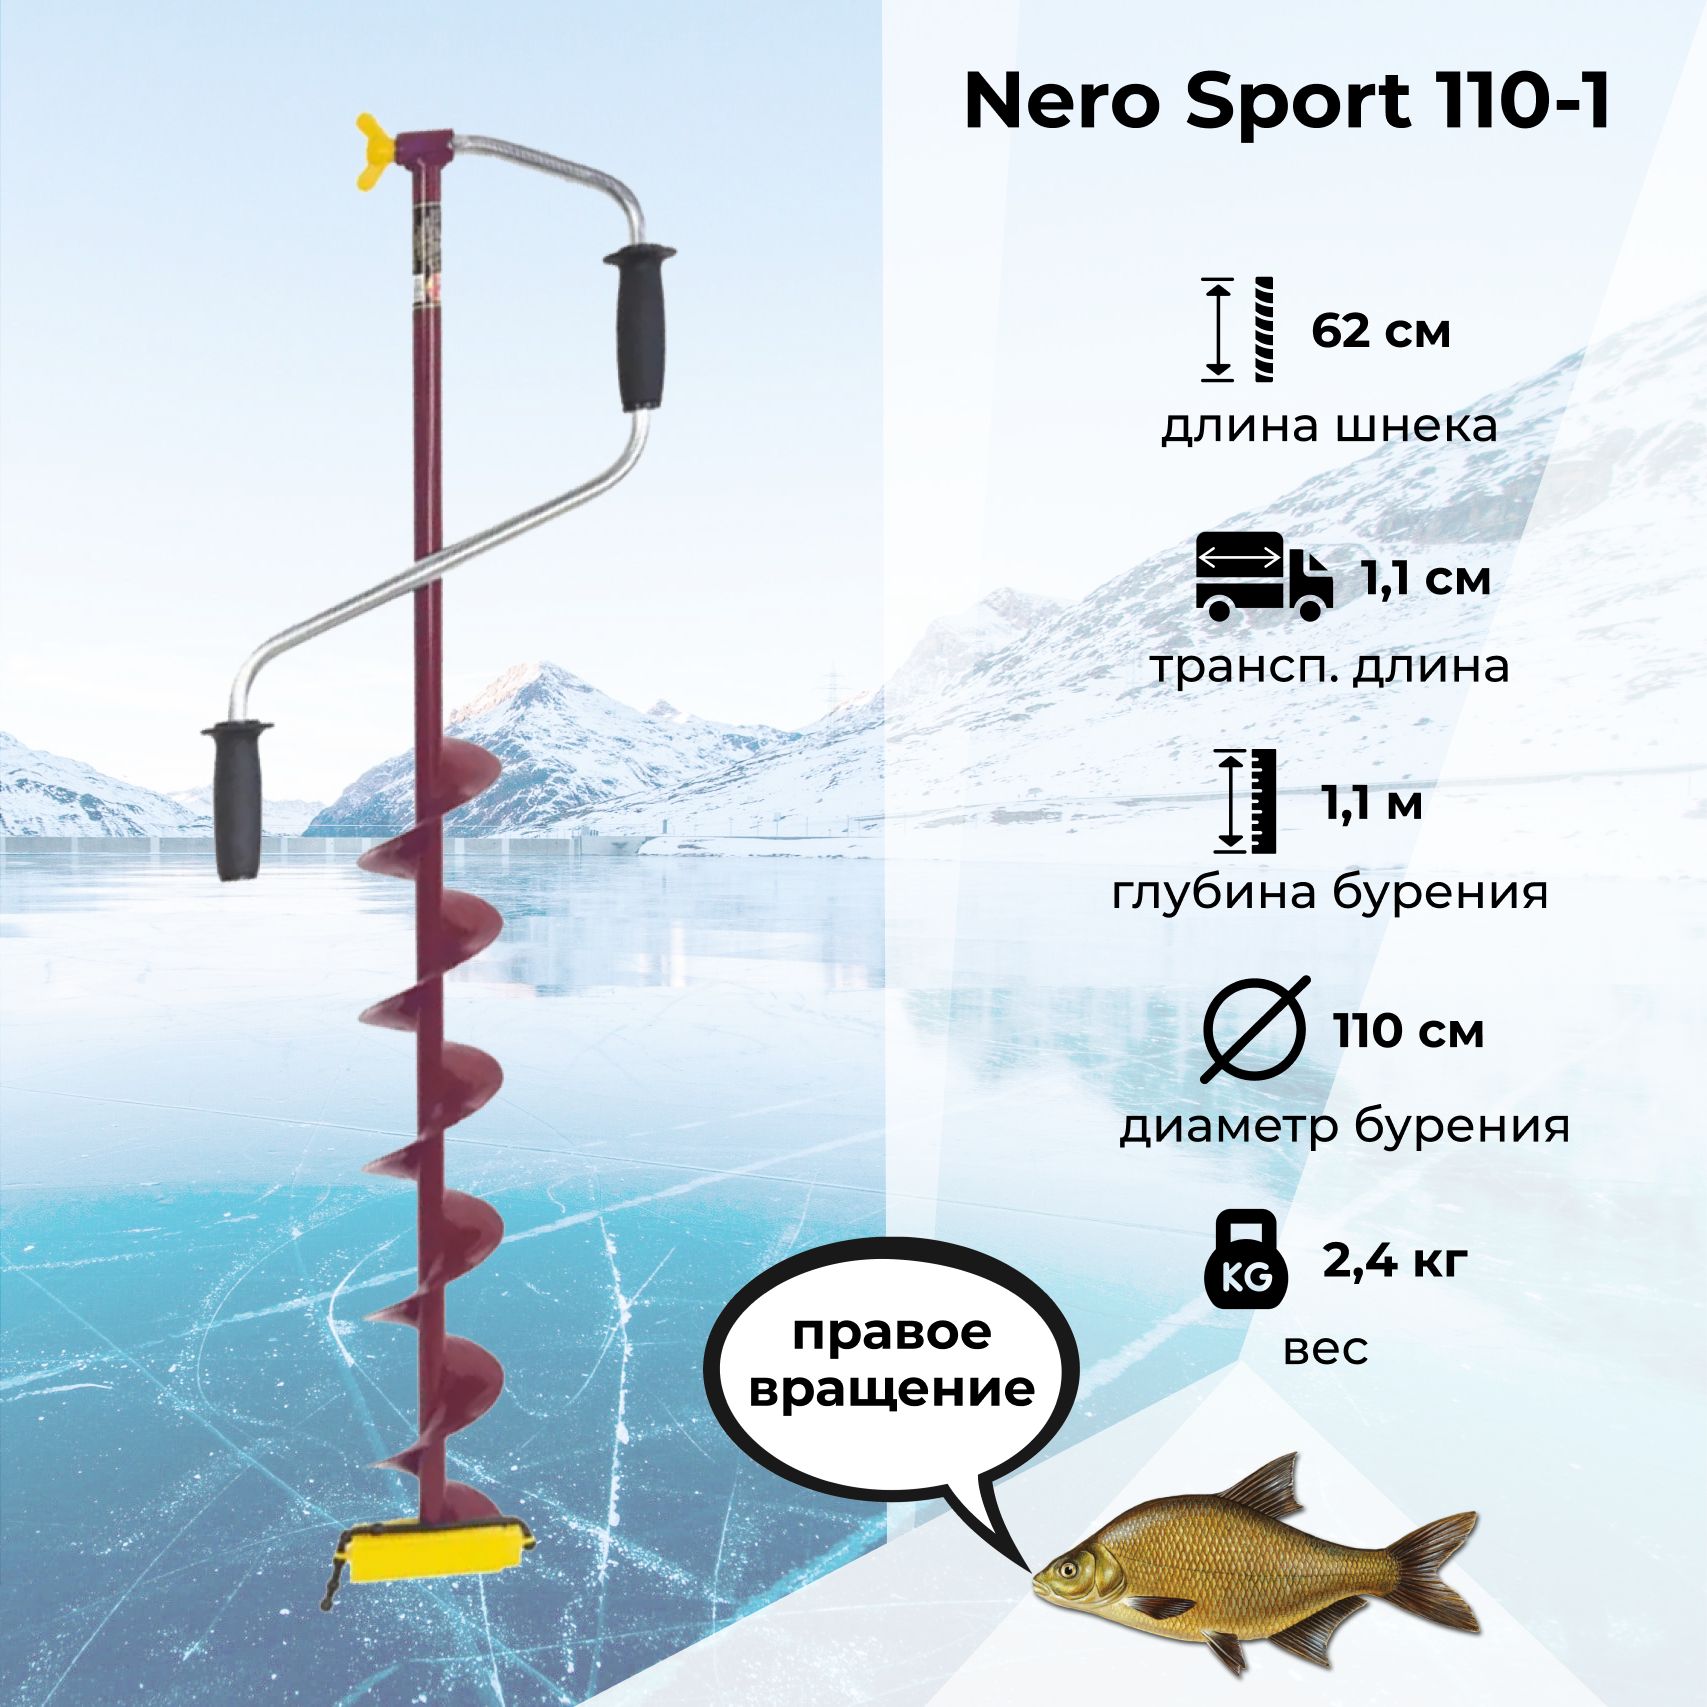 Ледобур Nero Sport 110. Неро-спорт " 110мм. Отзывы.